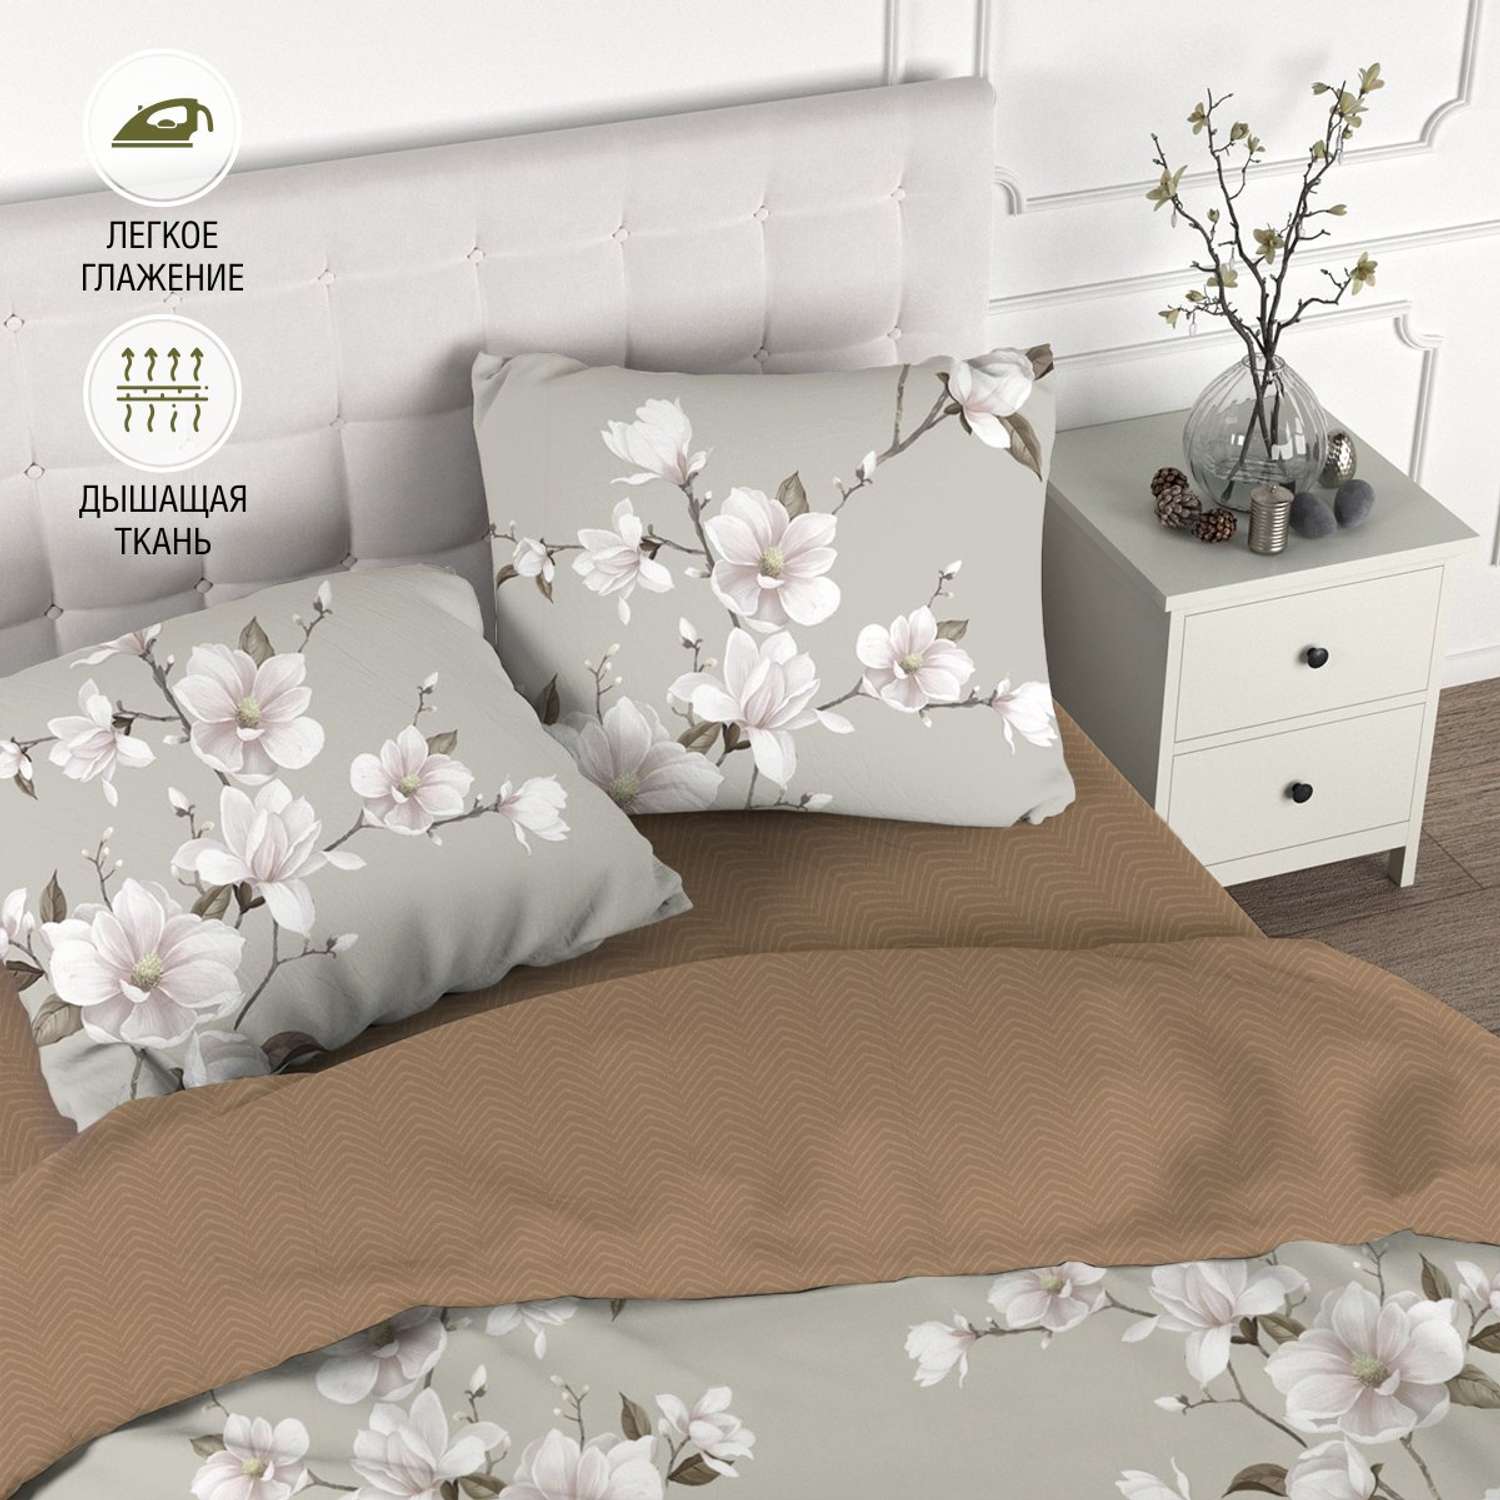 Комплект постельного белья для SNOFF Канела 2-спальный макси сатин рис.6084-1+6084а-1 - фото 1